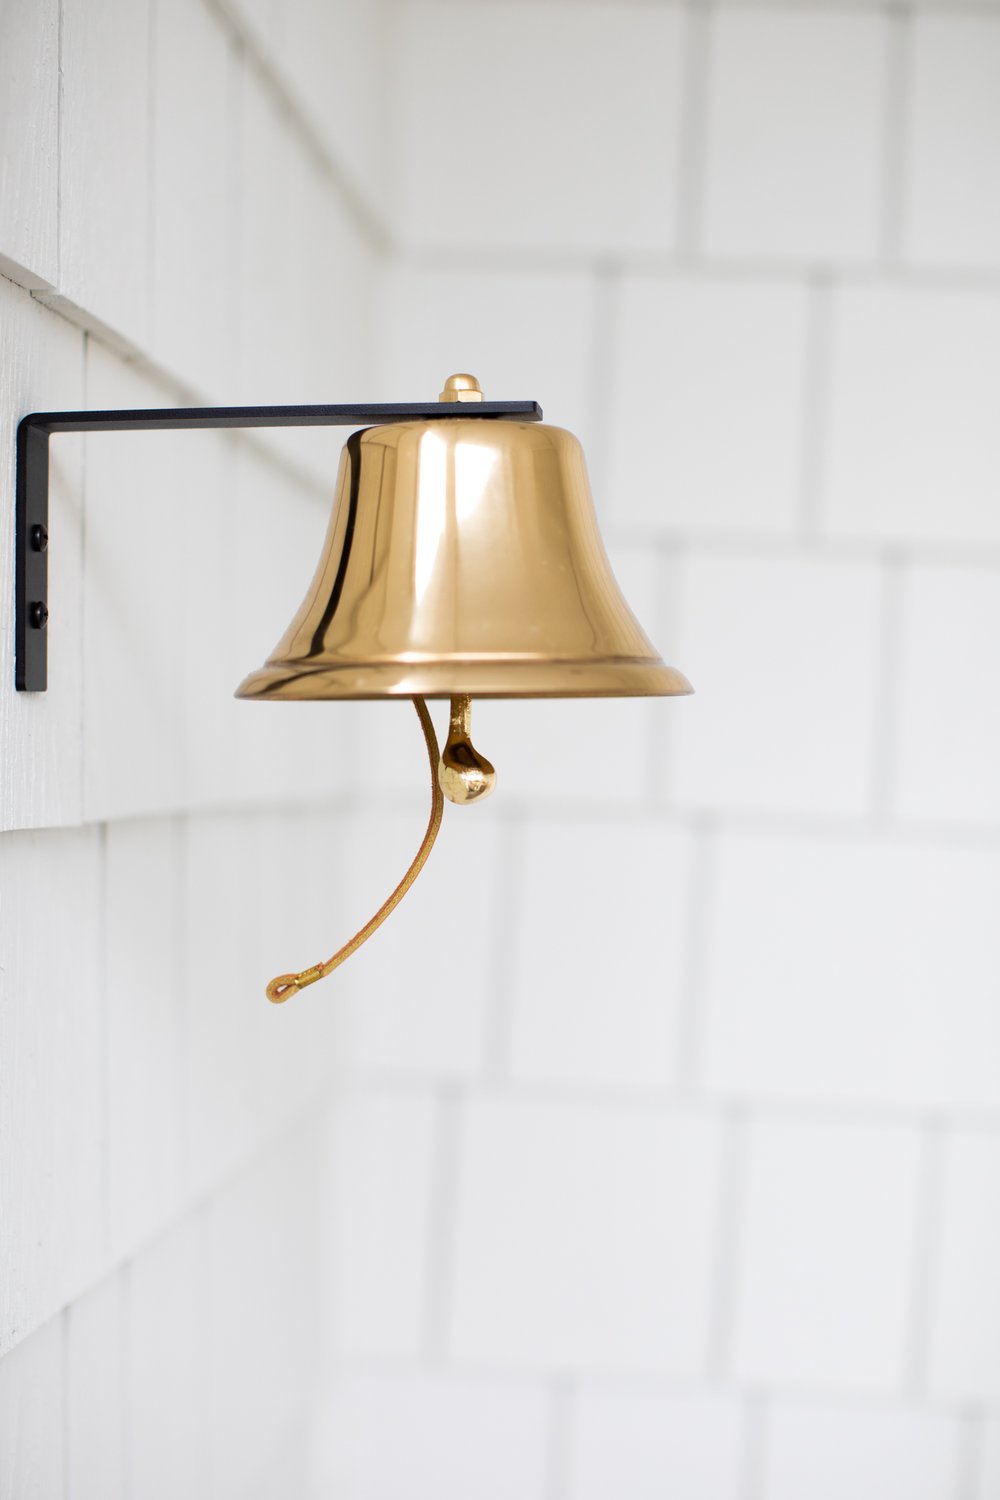 Brass bell hanging outside white shingled home